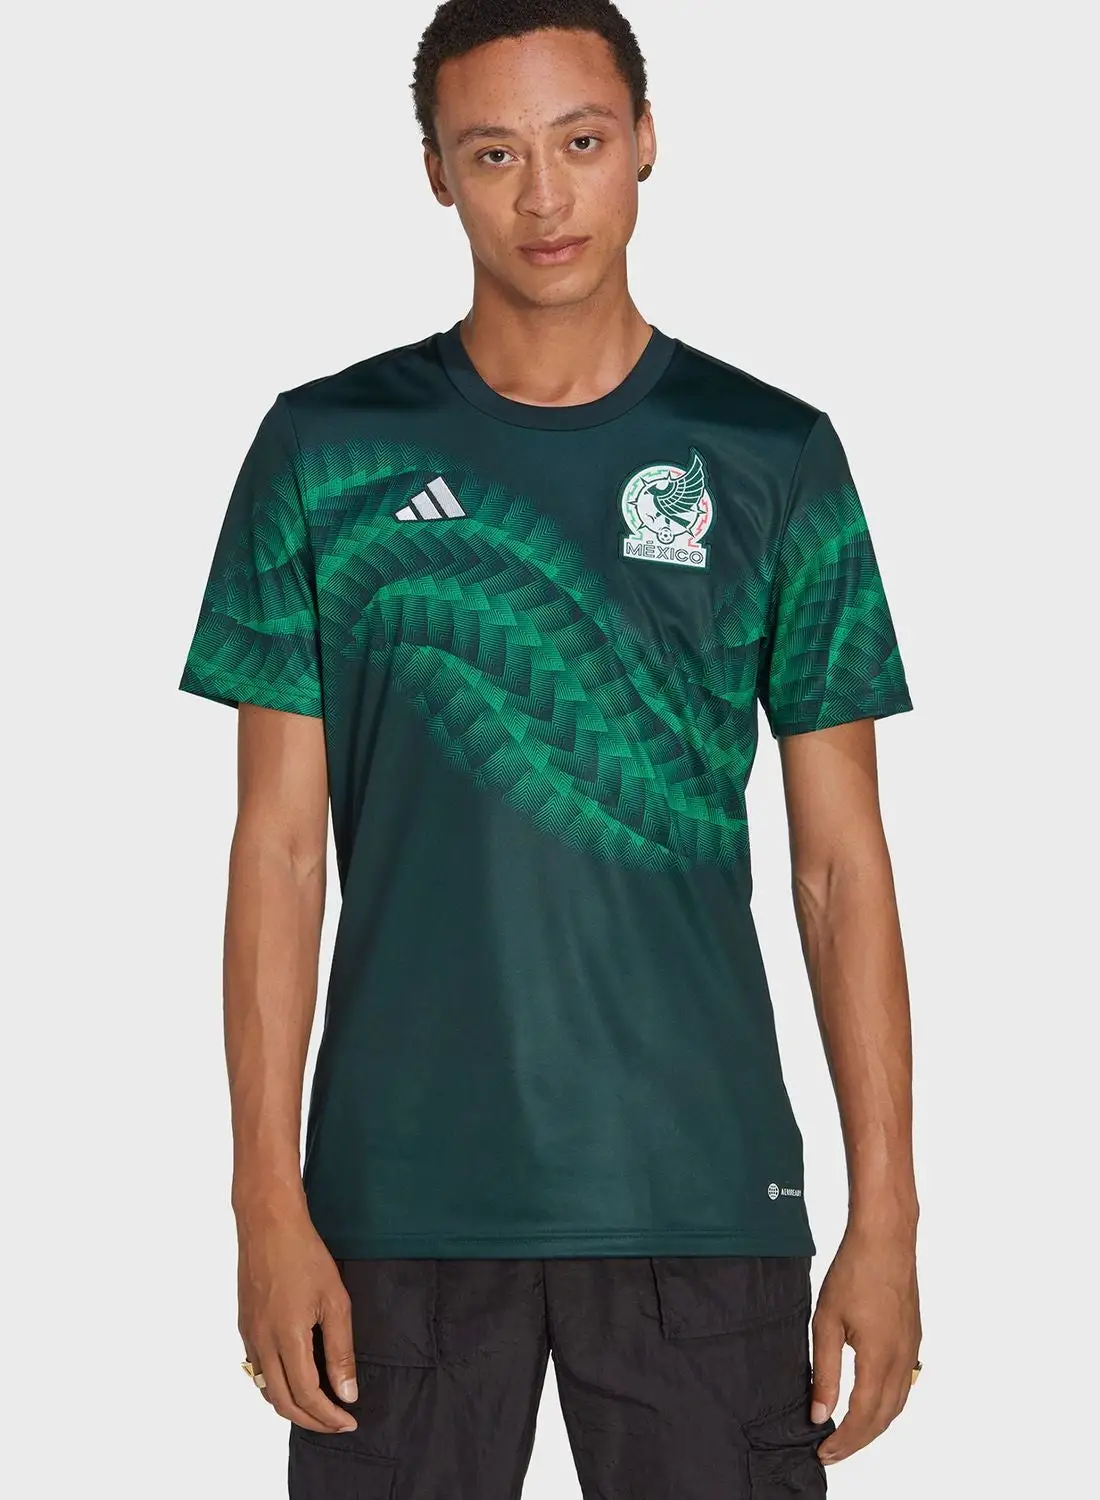 Adidas Mexico Preshi T-Shirt